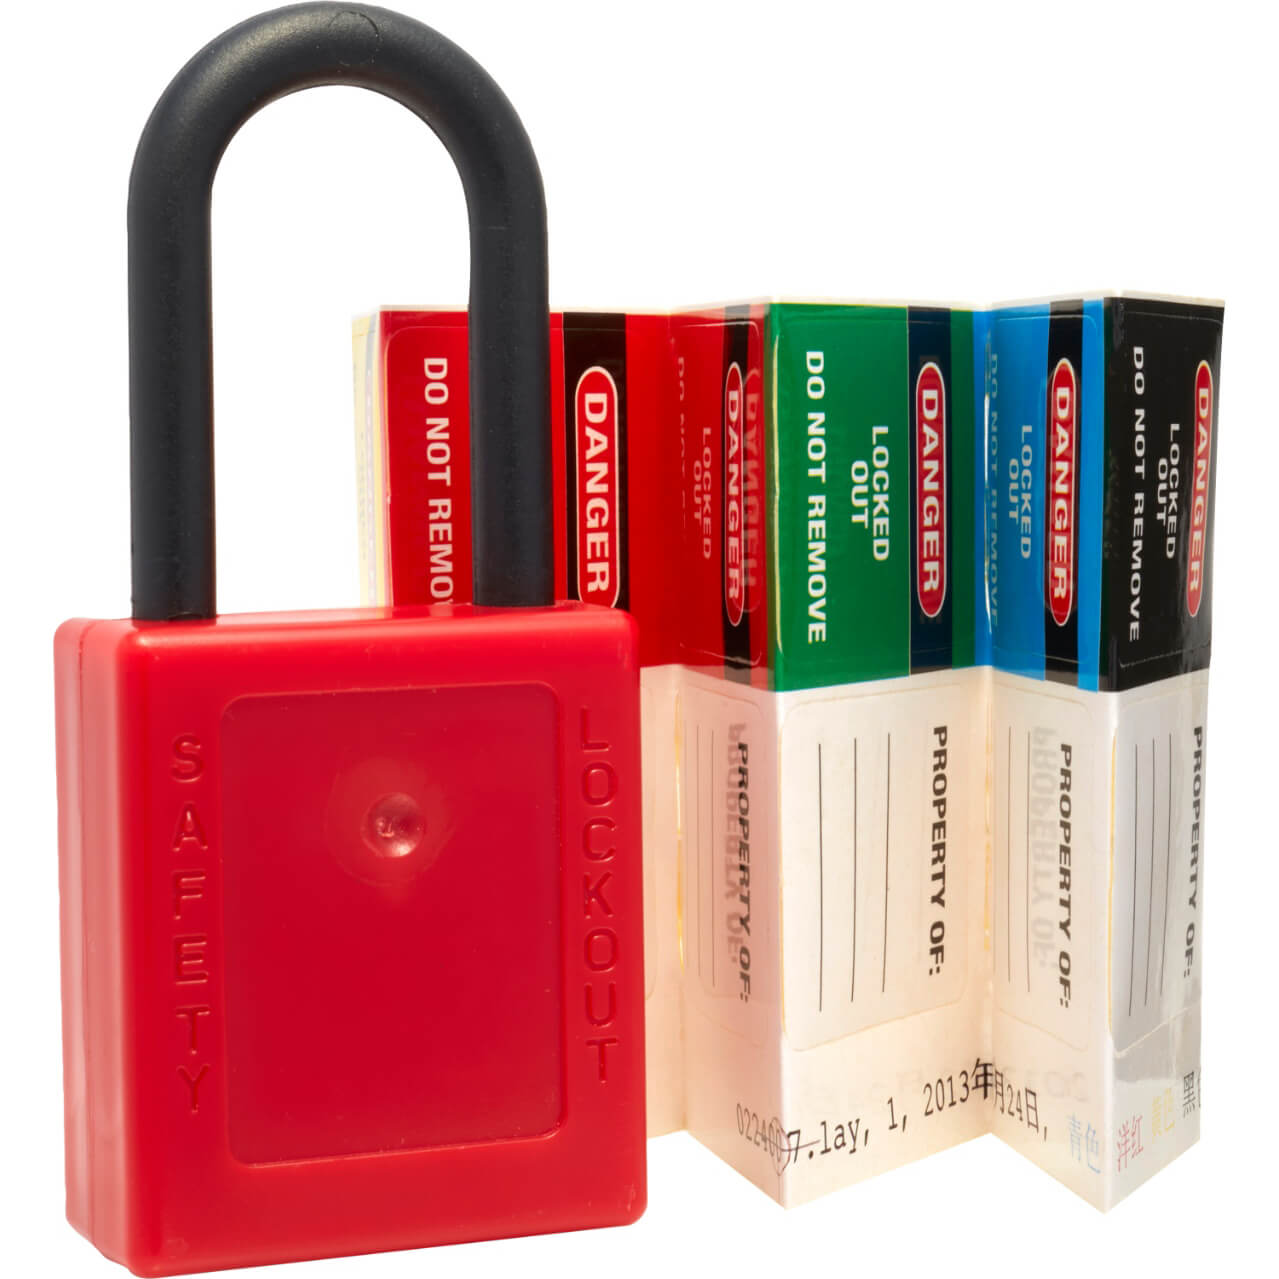 Image of Kasp Nylon Safety Lockout Padlock and 6 Piece Sticker Set